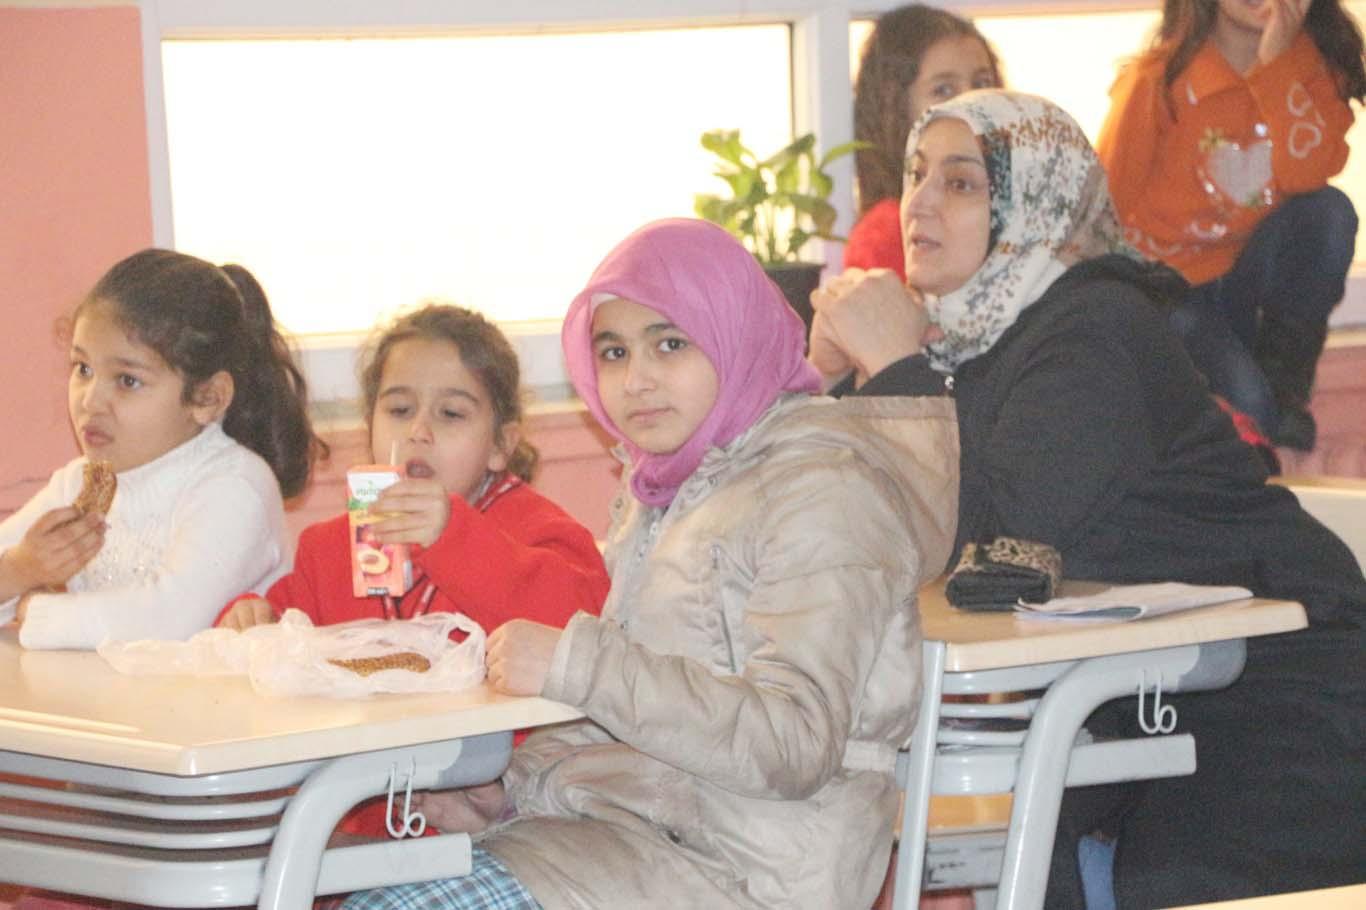 Mardin’de karne dağıtım töreni valinin gecikmesinden dolayı geç başladı